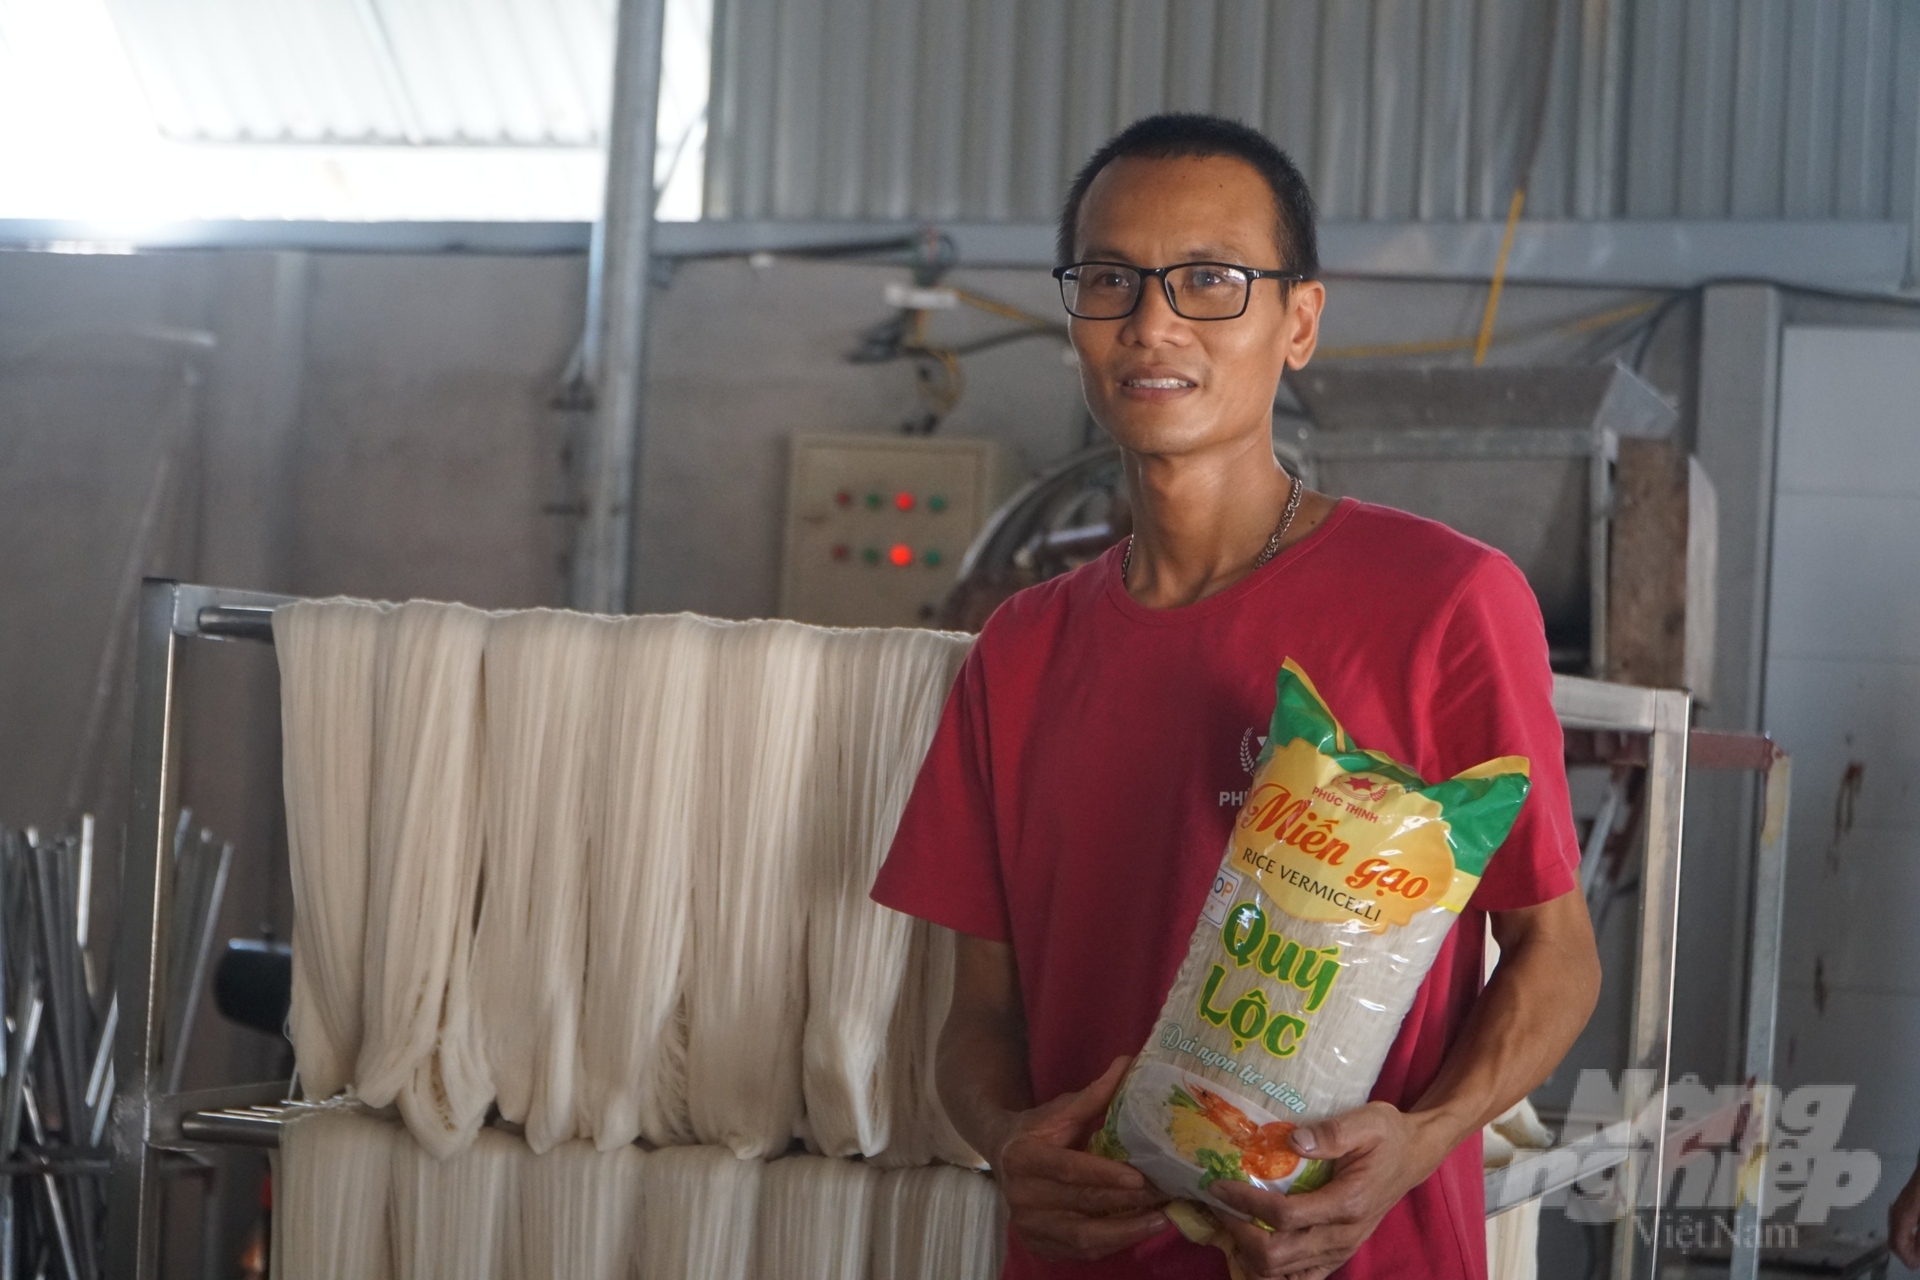 Anh Trịnh Đình Nhạc, chủ cơ sở sản xuất miến gạo Phúc Thịnh. Ảnh: Quốc Toản.